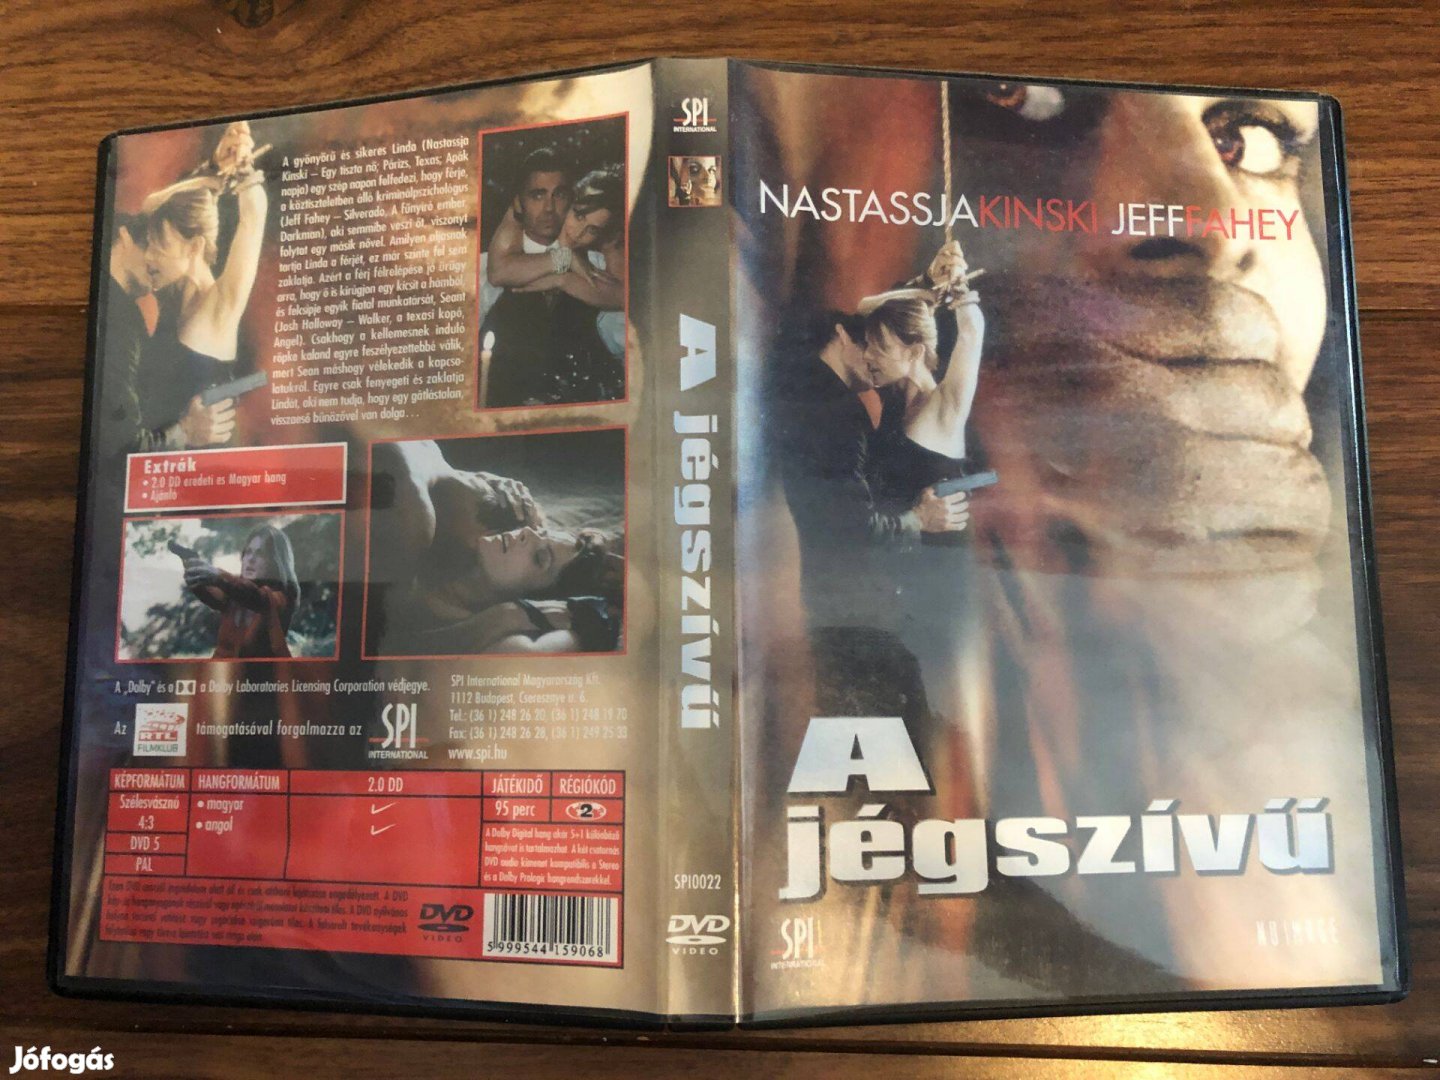 A jégszívű (karcmentes, Nastassja Kinski) DVD